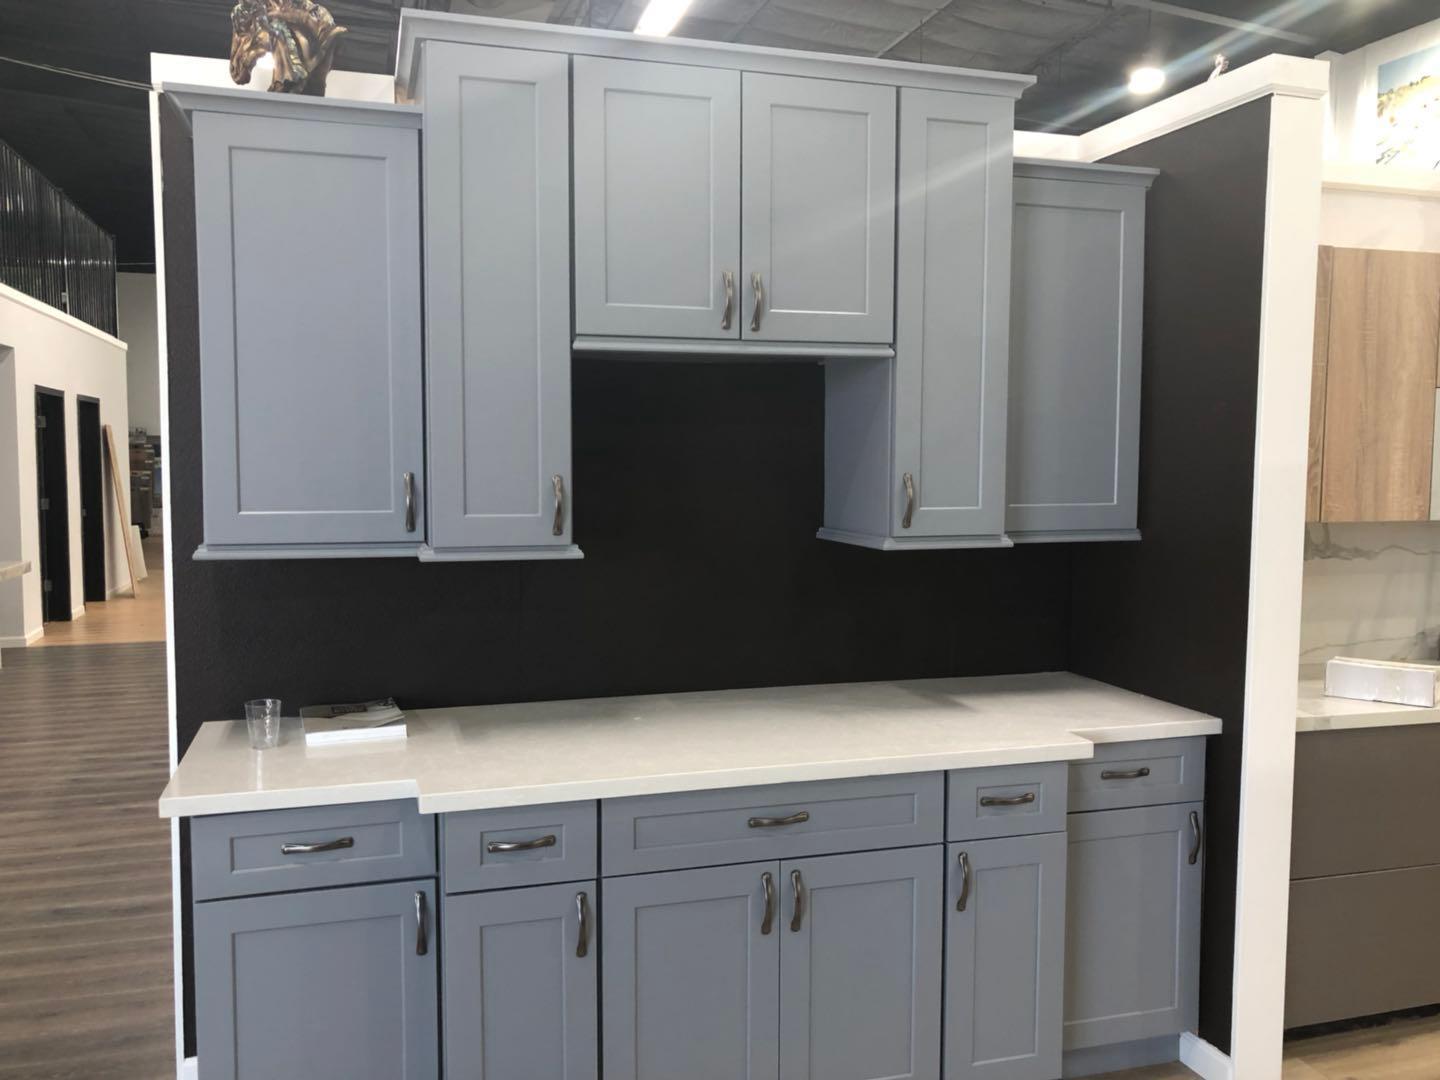 Apex Kitchen Cabinet And Granite Countertop 1145 Grand Ave San